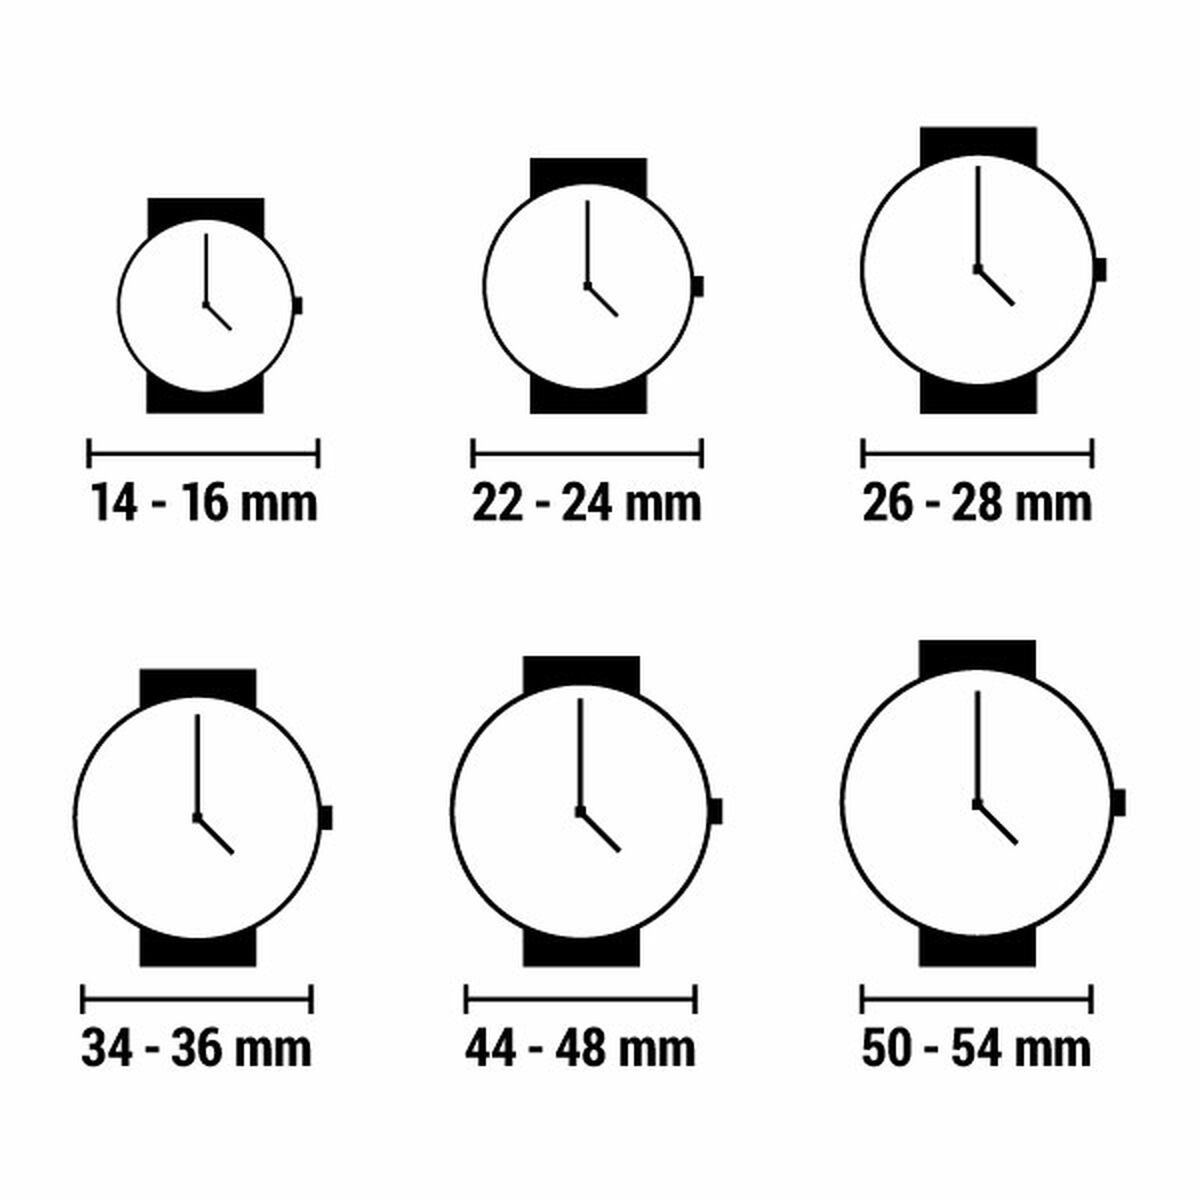 Horloge Dames Swatch SOMETHING BLACK